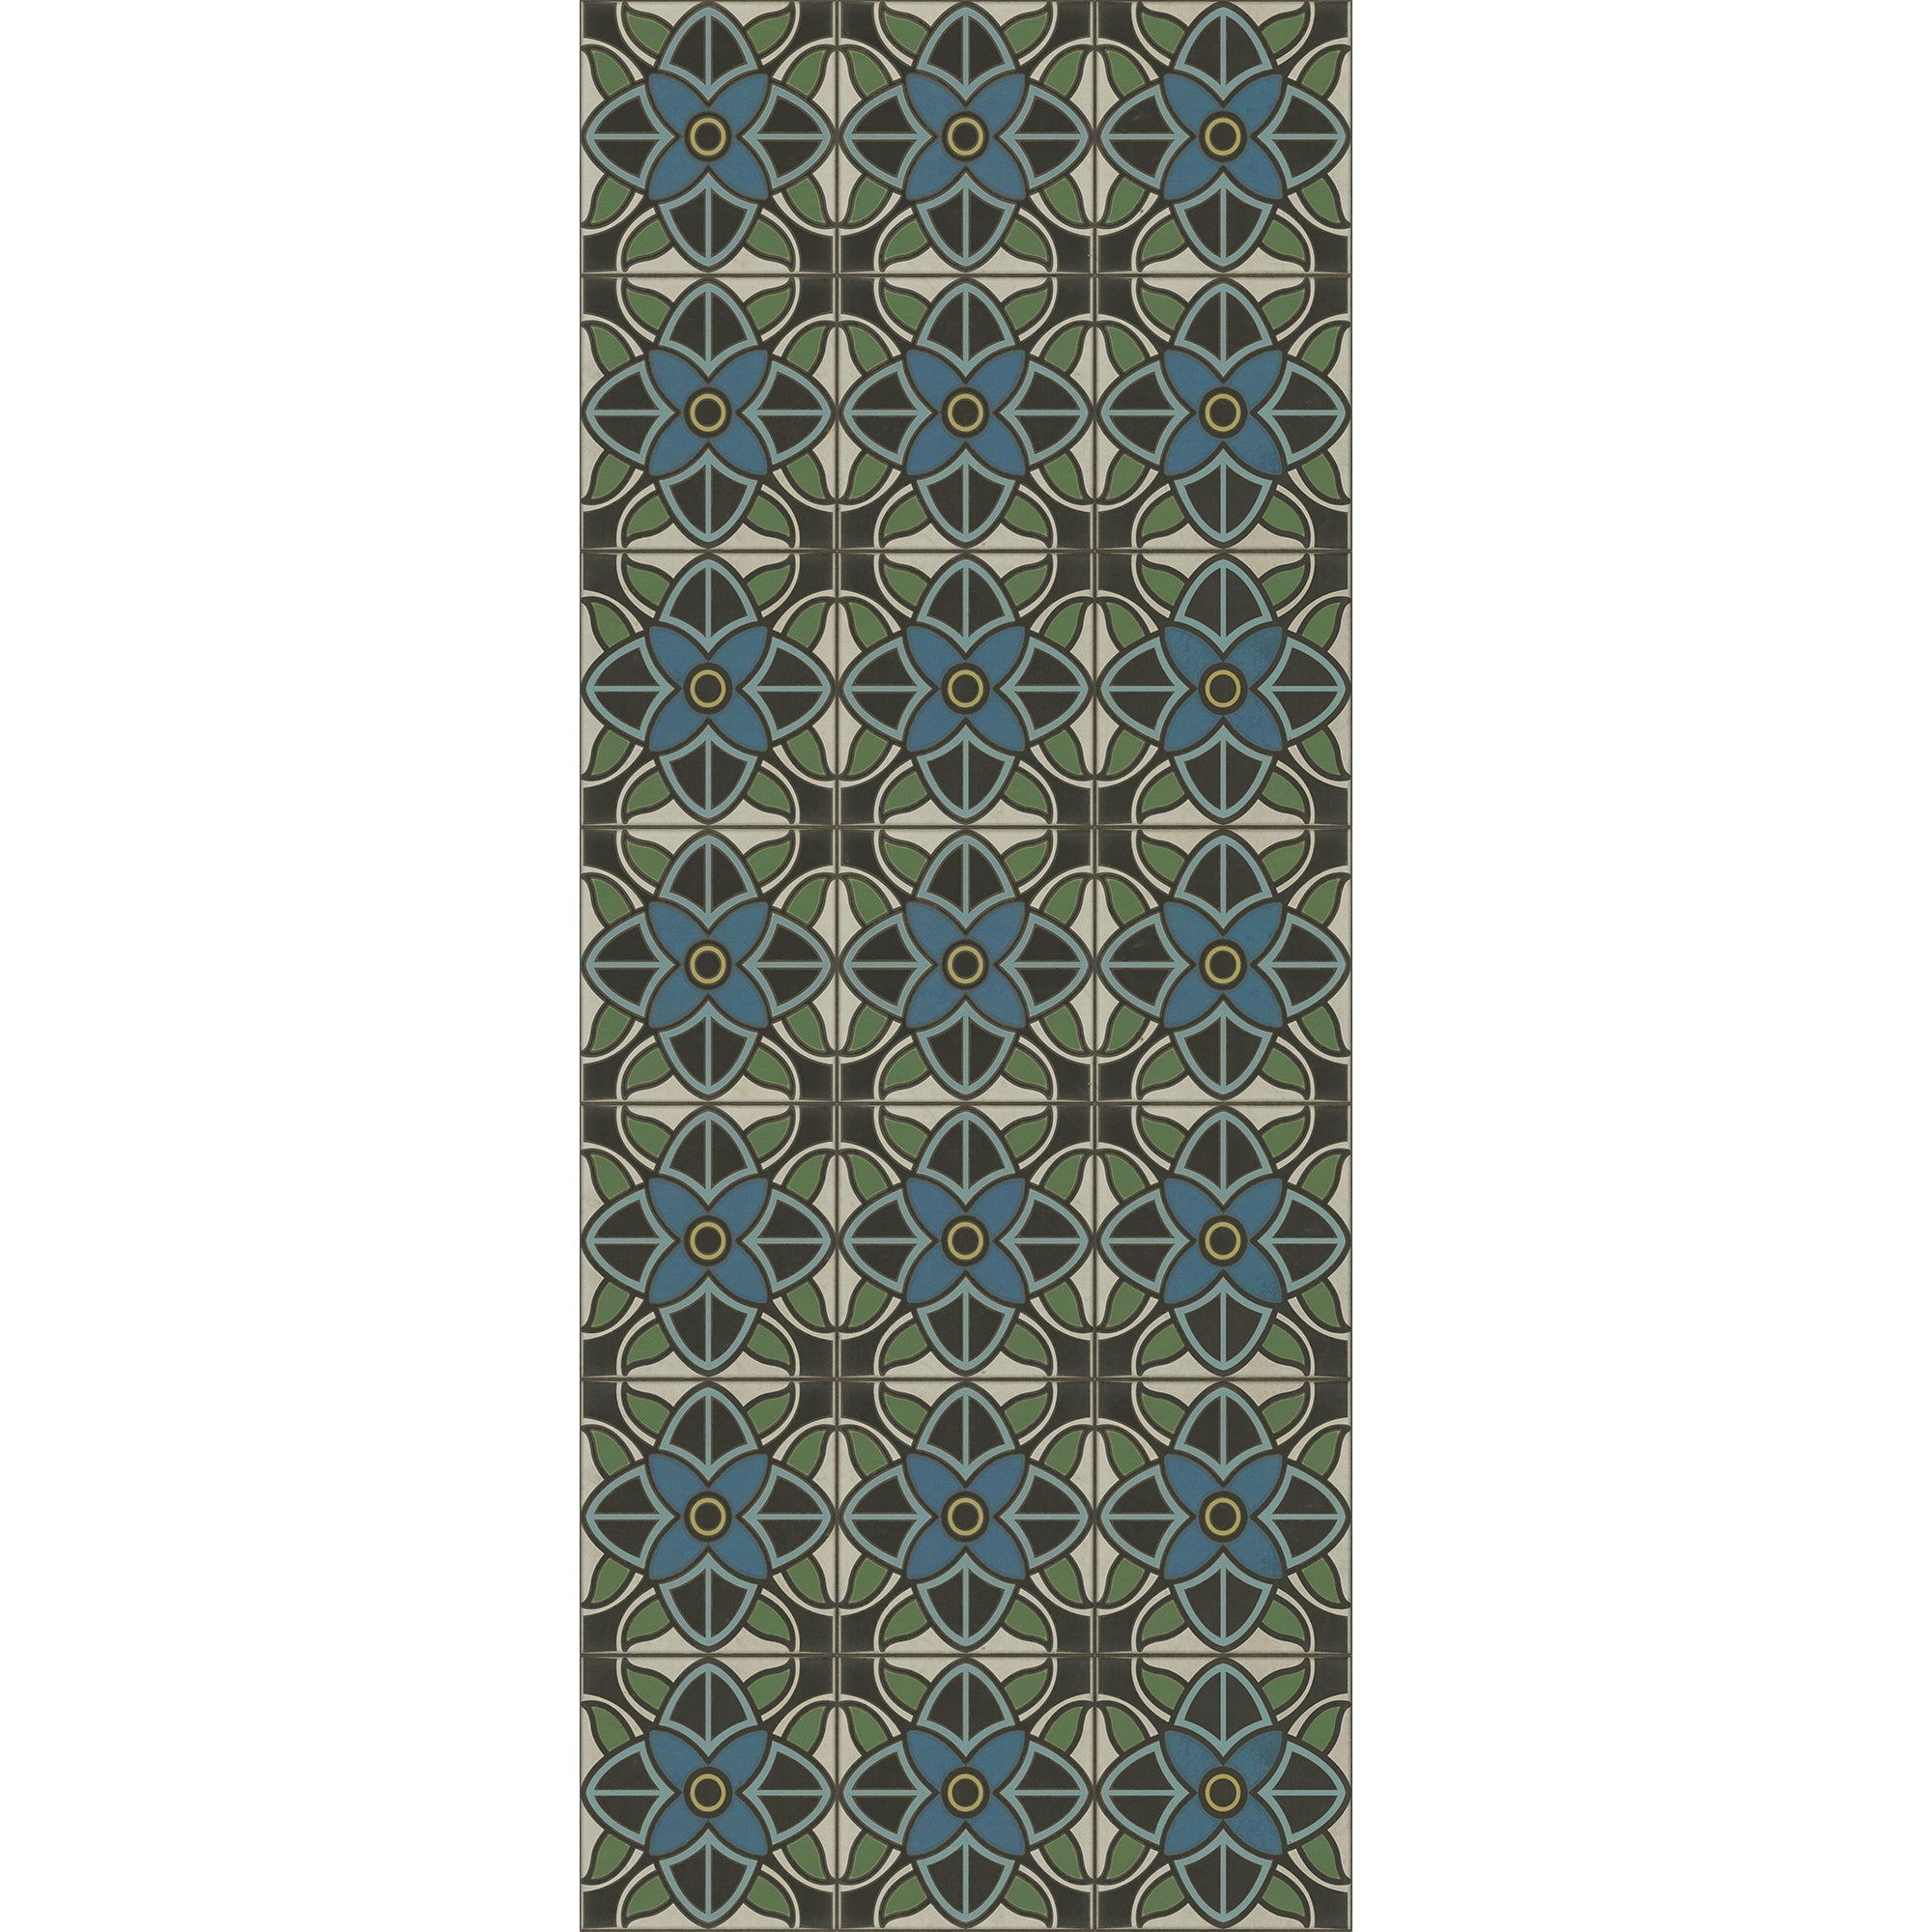 Pattern 80 Judy Garland Vinyl Floor Cloth